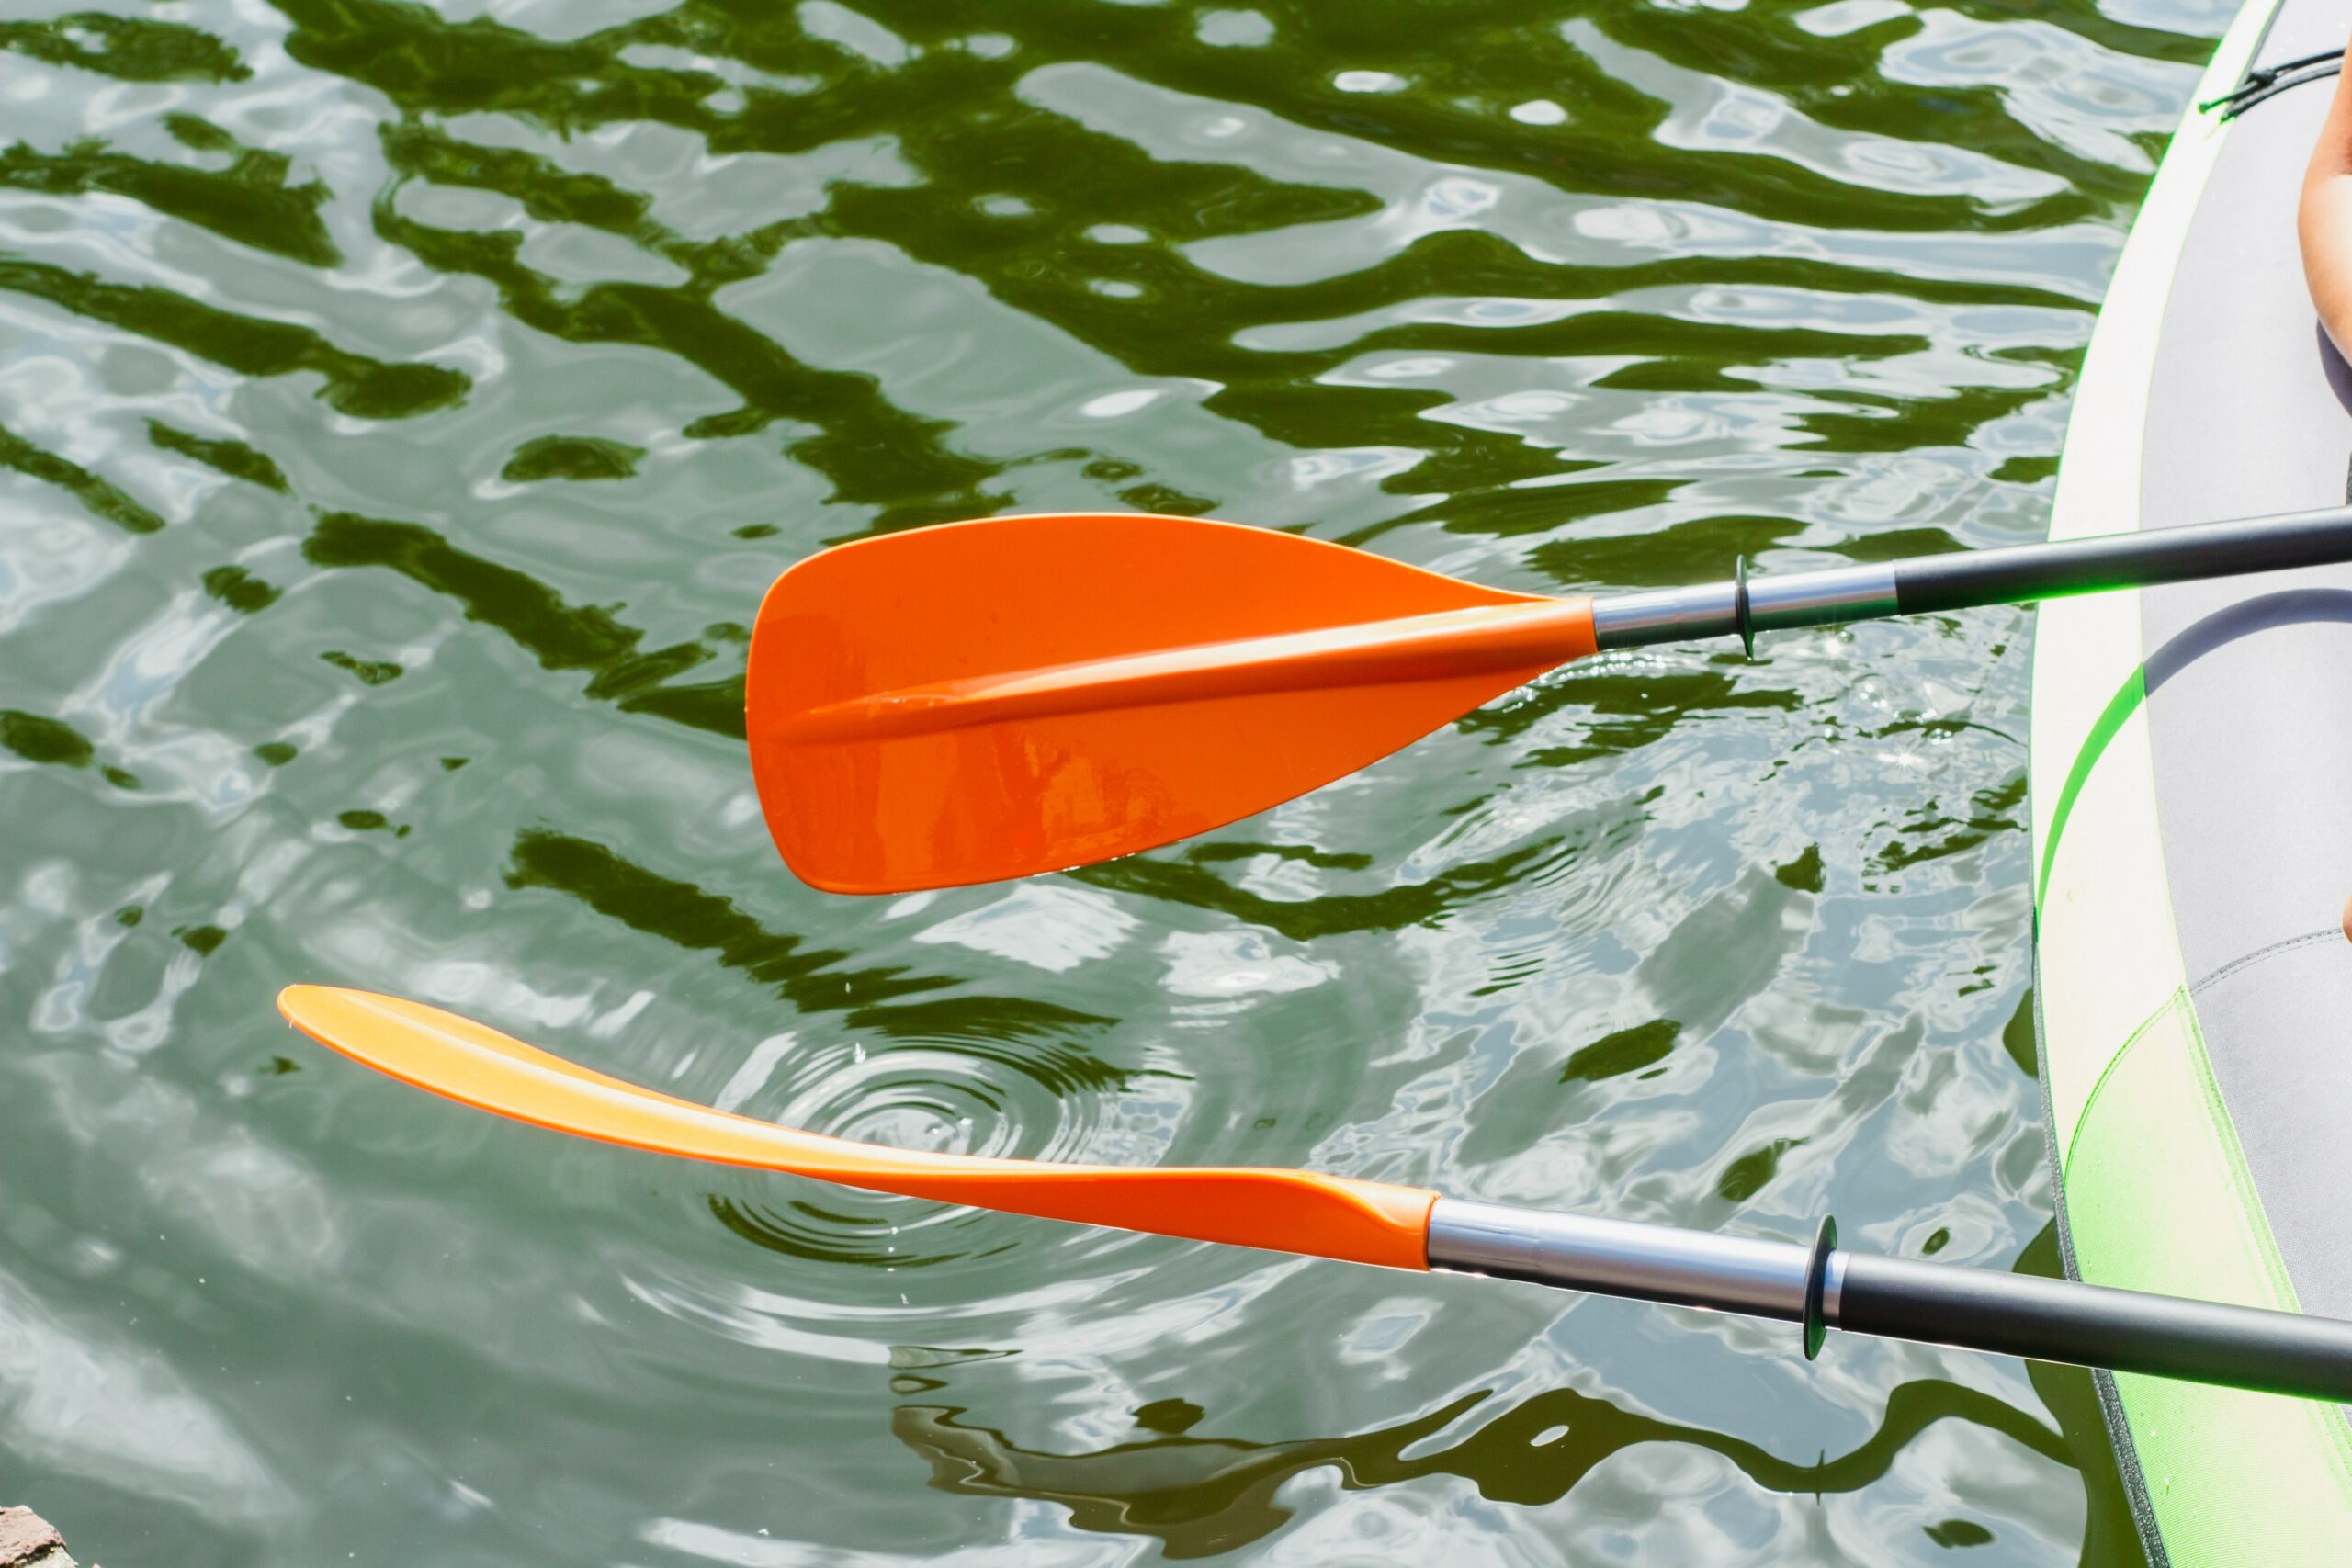 detalhe de remos na lateral de barco inflável em possível aventura curta em rio ou lago